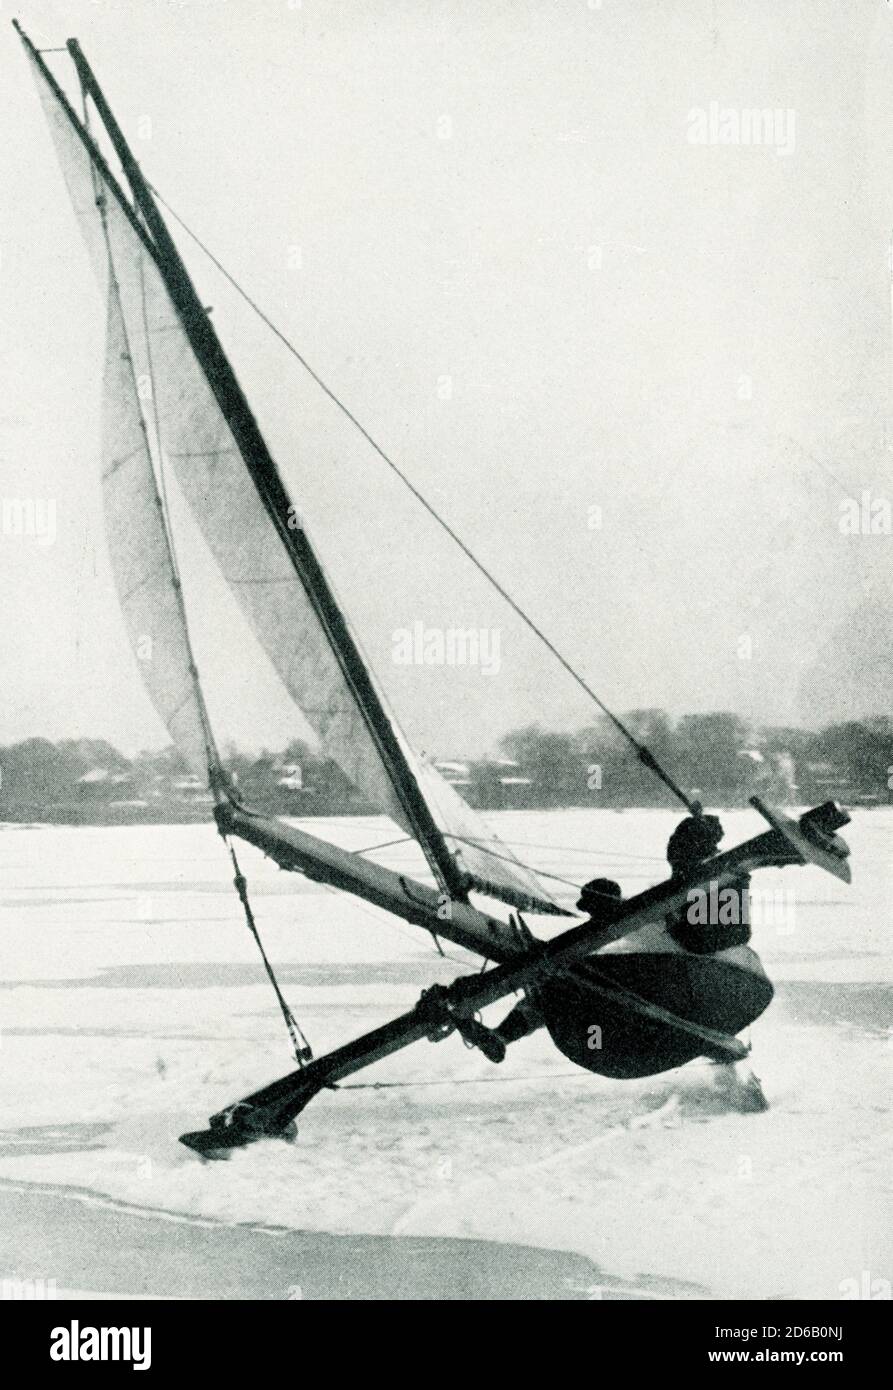 Ice Boating in Long Branch New Jersey während eines der spannenden Rennen, die der Long Branch Ice Boat and Yacht Club um 1920 veranstaltet, dreht er sich um einen schnellen Clip. Stockfoto